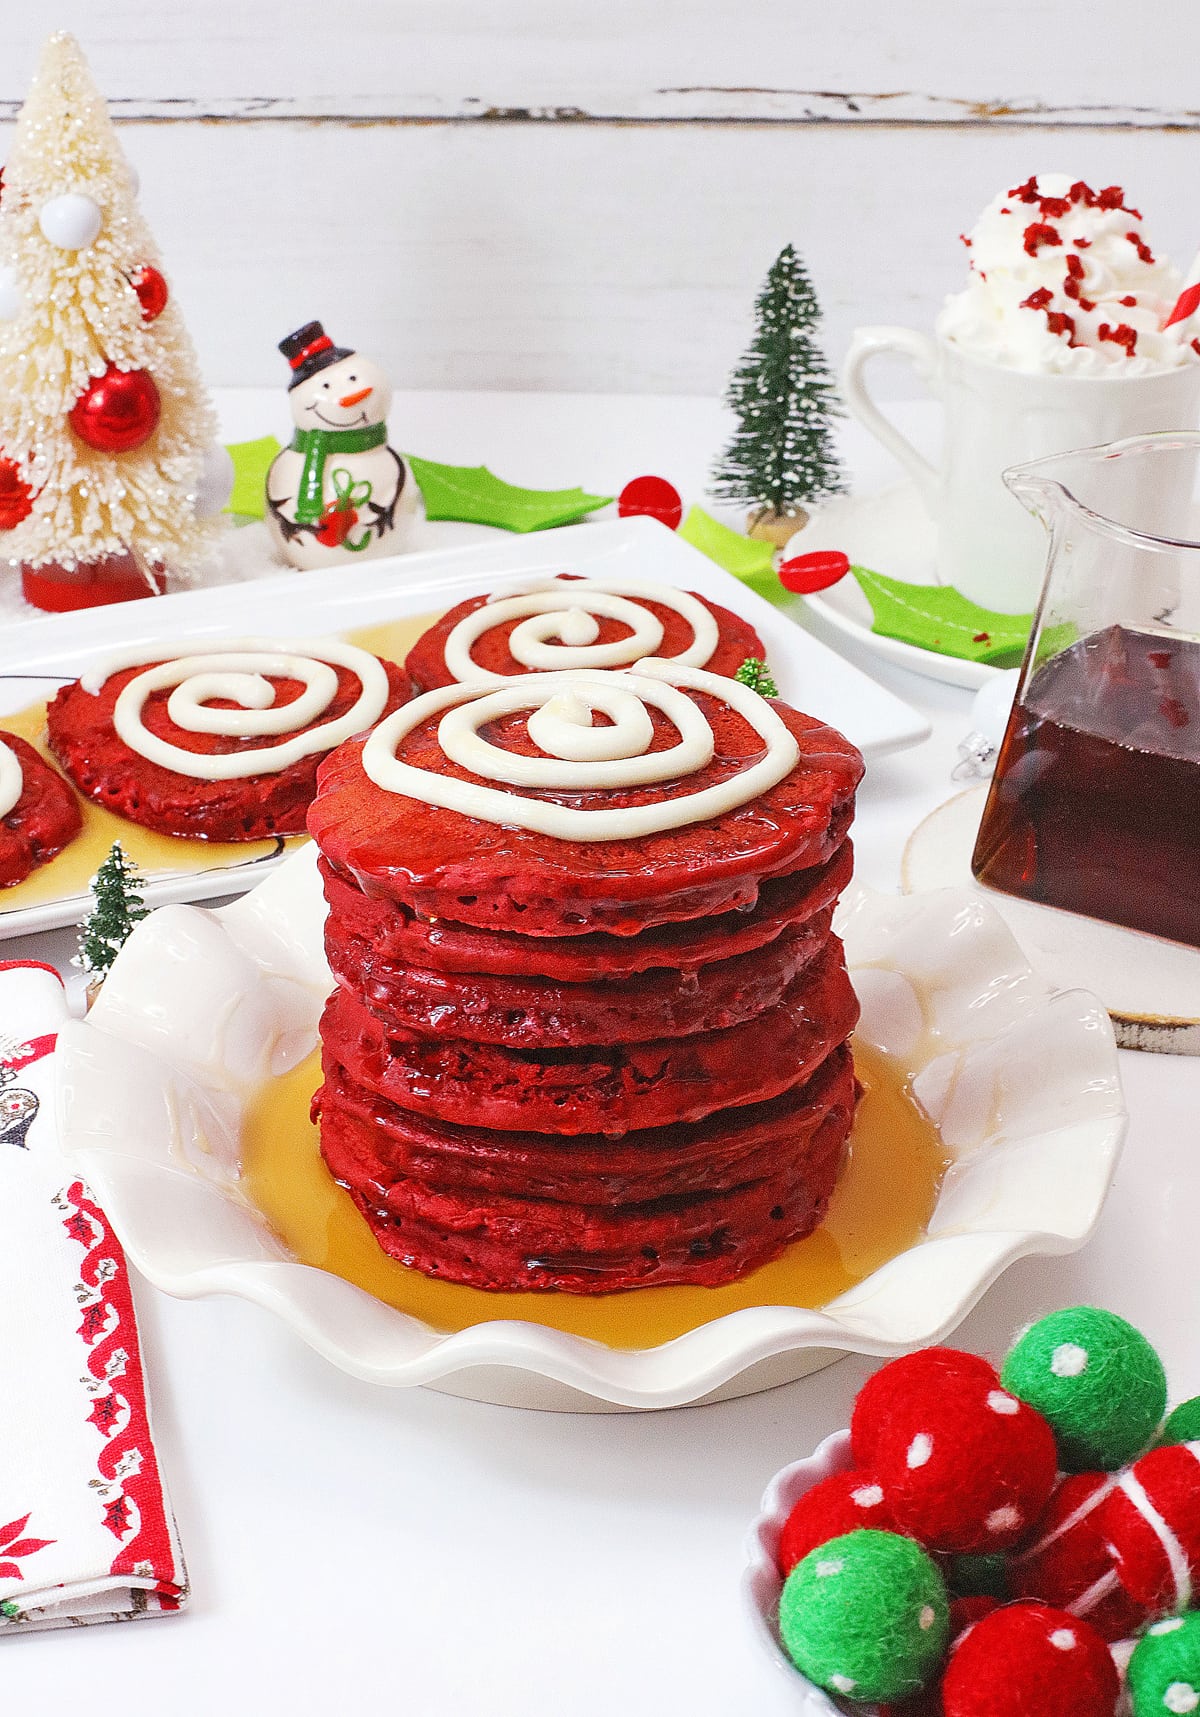 red velvet pancakes stacked on white plate